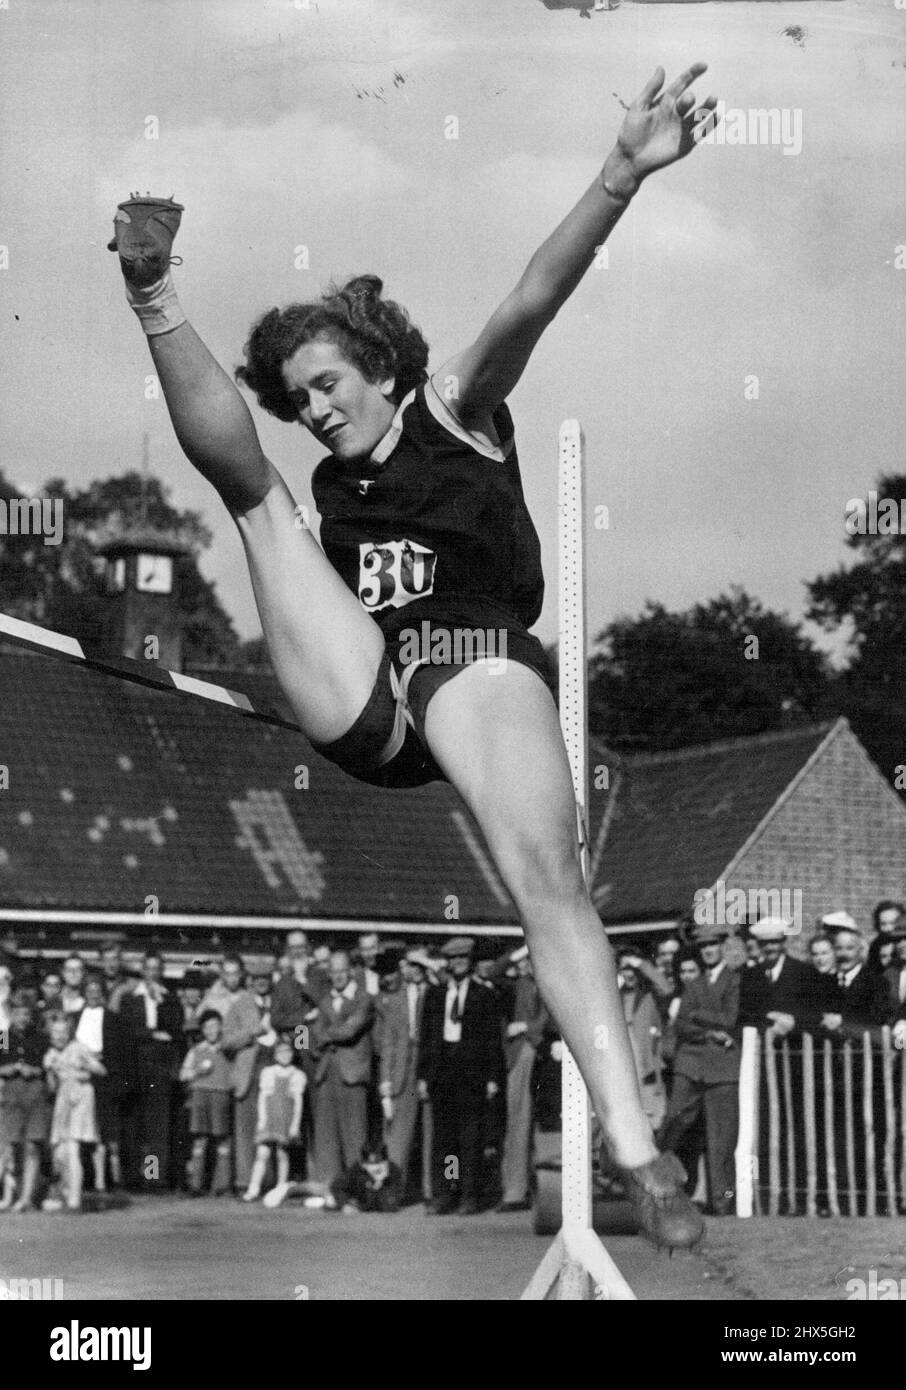 Stylistin Miss S. Alexander räumt 4 Fuß 10 Zoll spektakuläre Mode. Ihr stilvoller Sprung gewann ihren ersten Platz im Hochsprung-Event bei einem Sporttreffen auf der Tooting Common Athletic Track. 30. September 1947. (Foto von Fox). Stockfoto